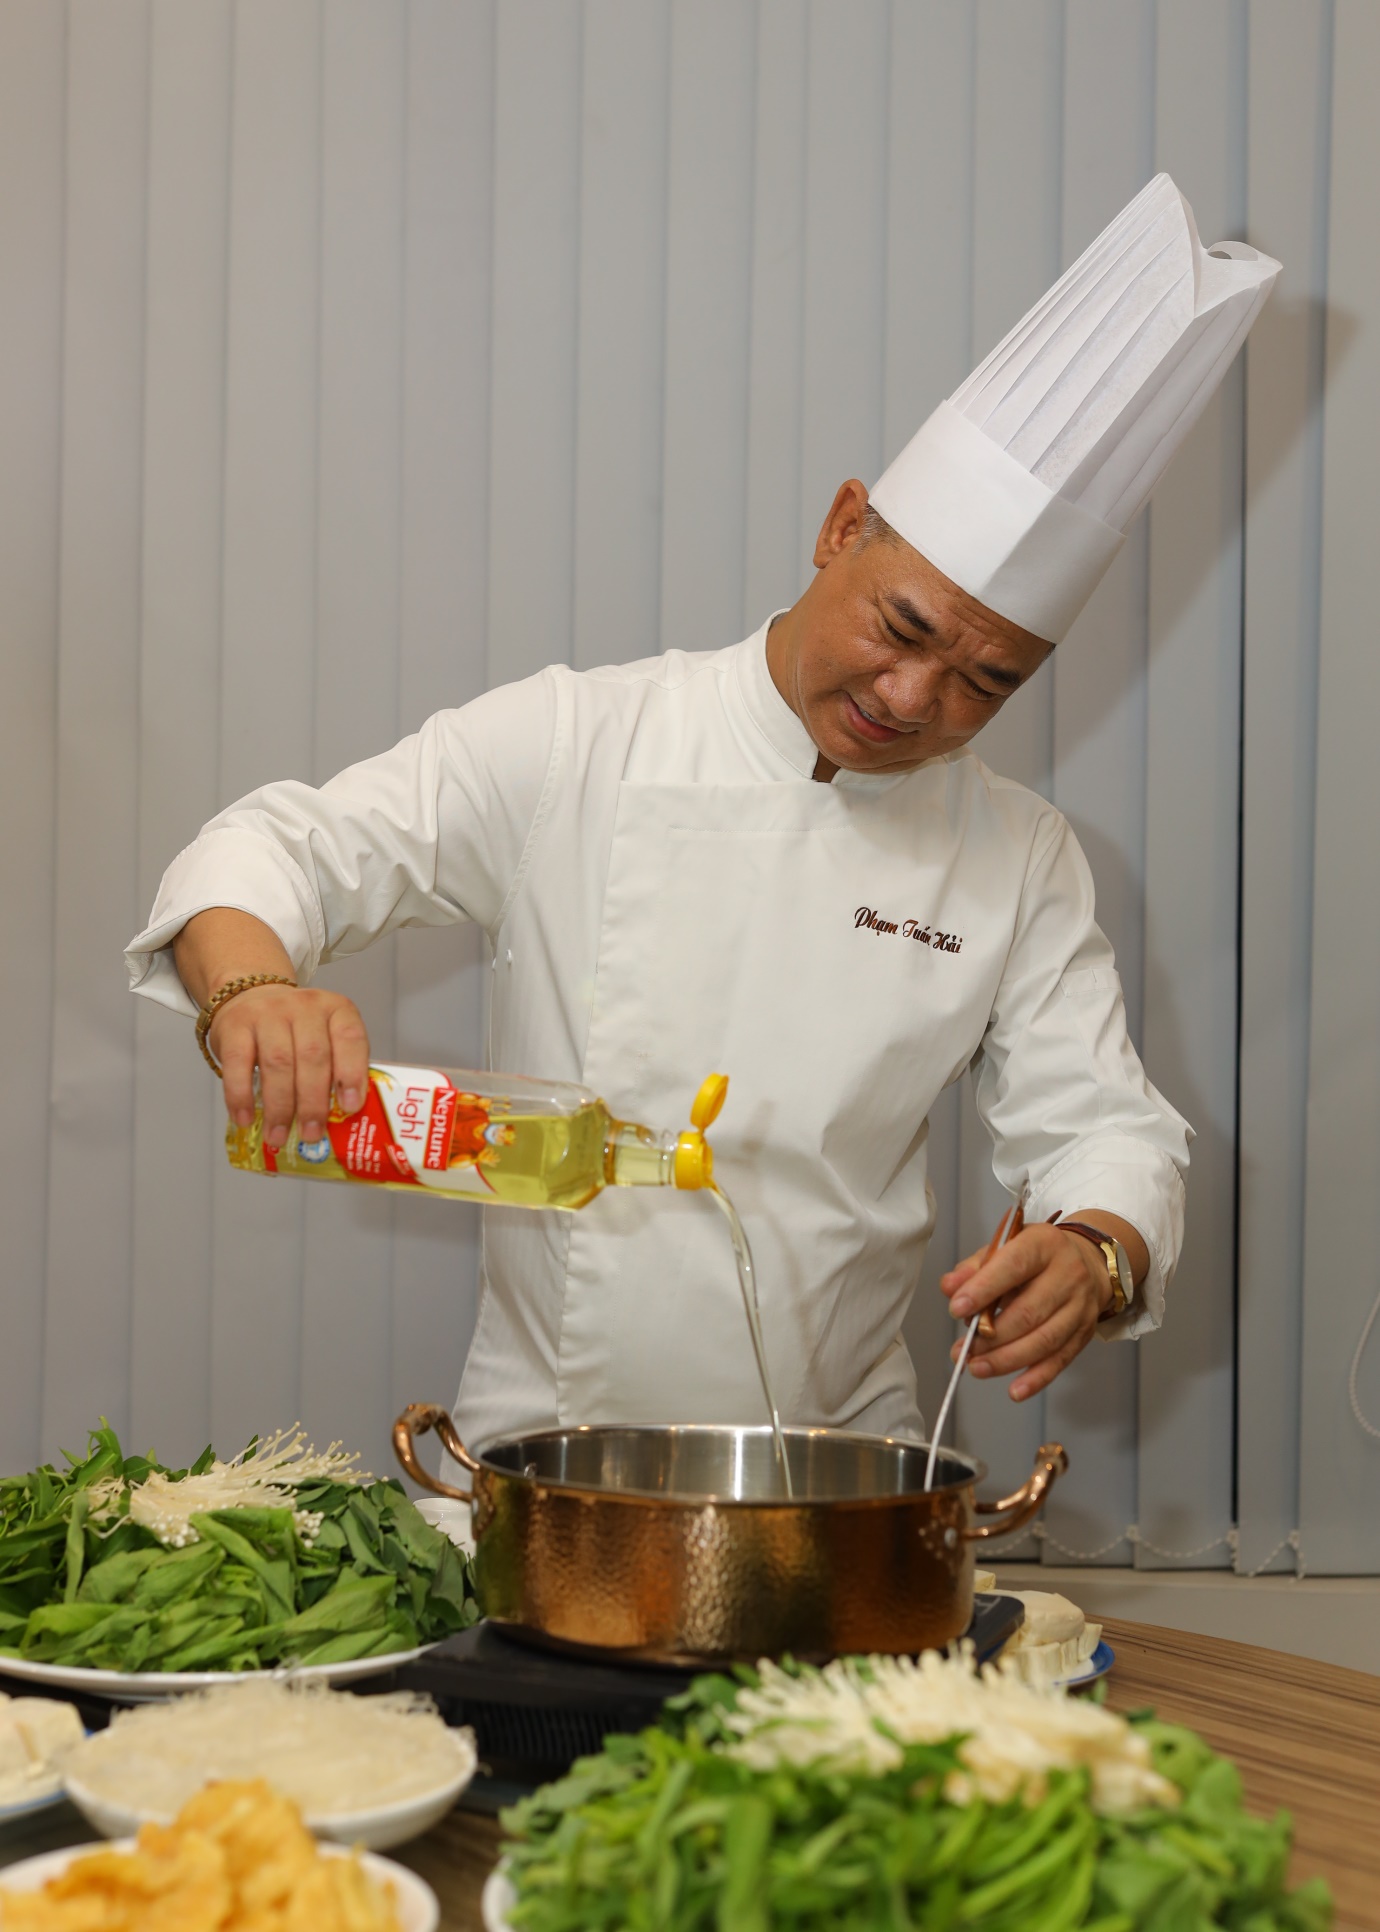 Chuyên gia ẩm thực: Bí quyết nấu ngon từ nguyên liệu quen thuộc trong bếp - Ảnh 1.